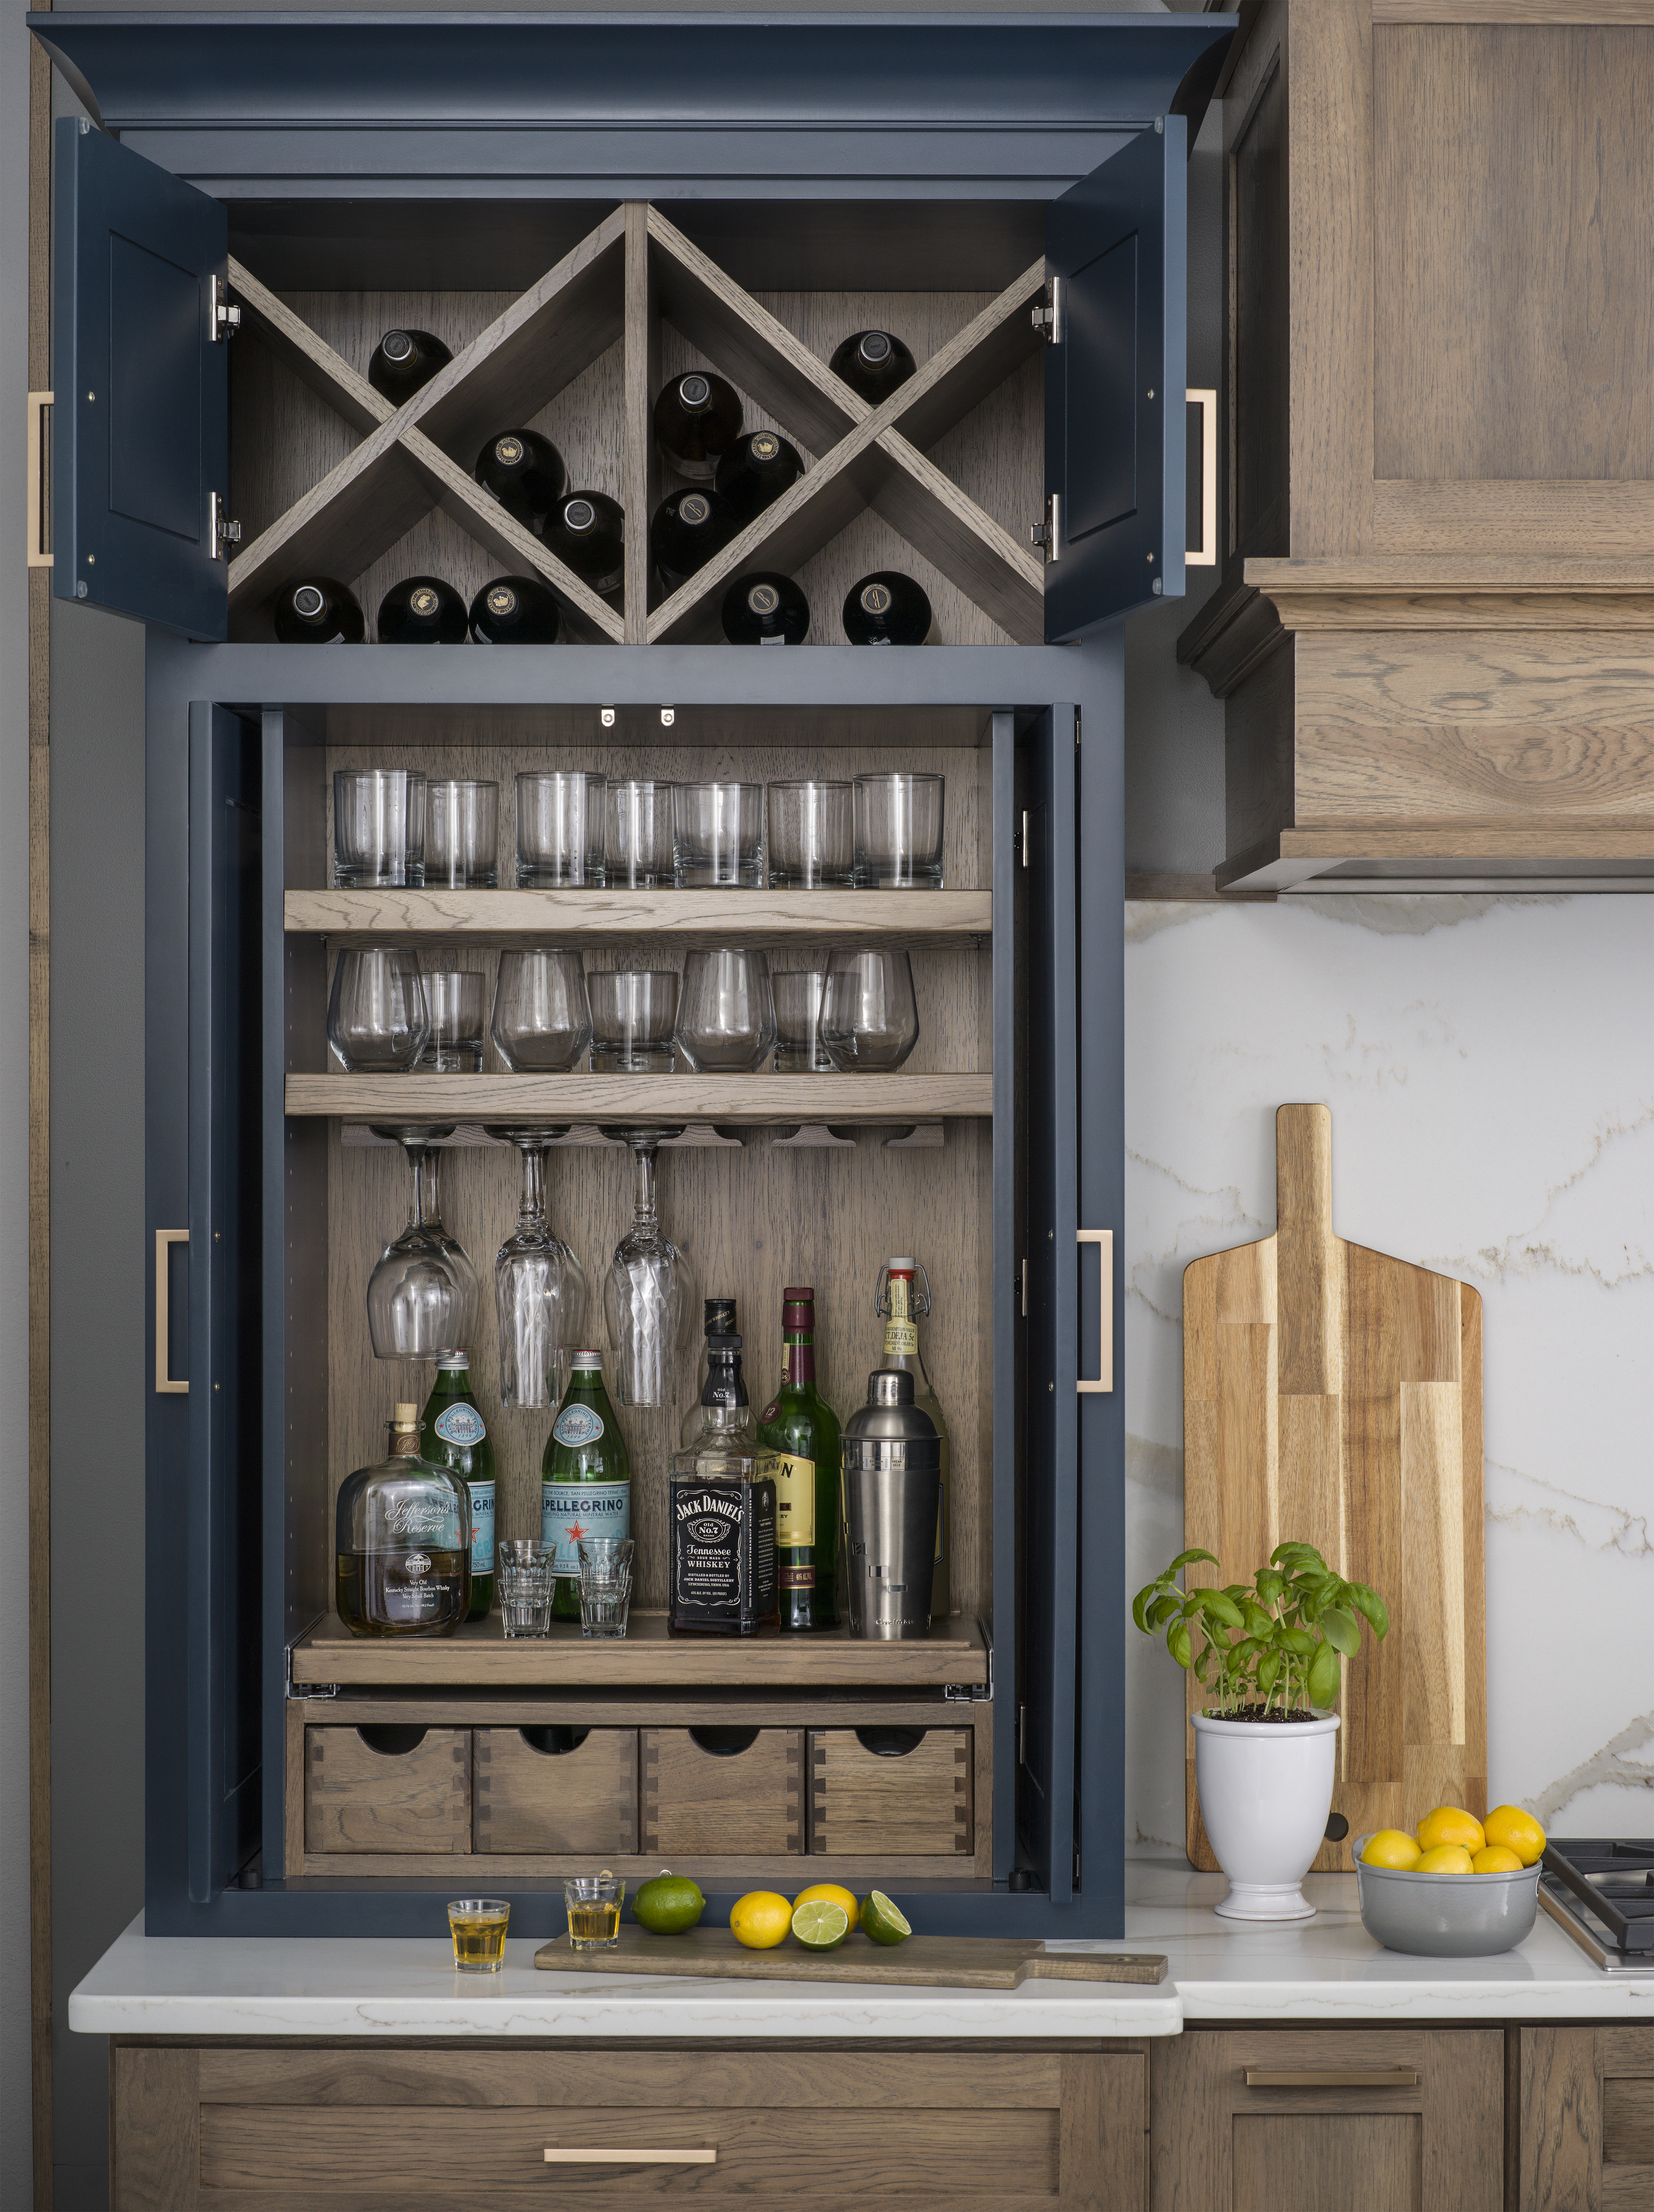 Larder Cabinet B – Beverage Center for Home Bar